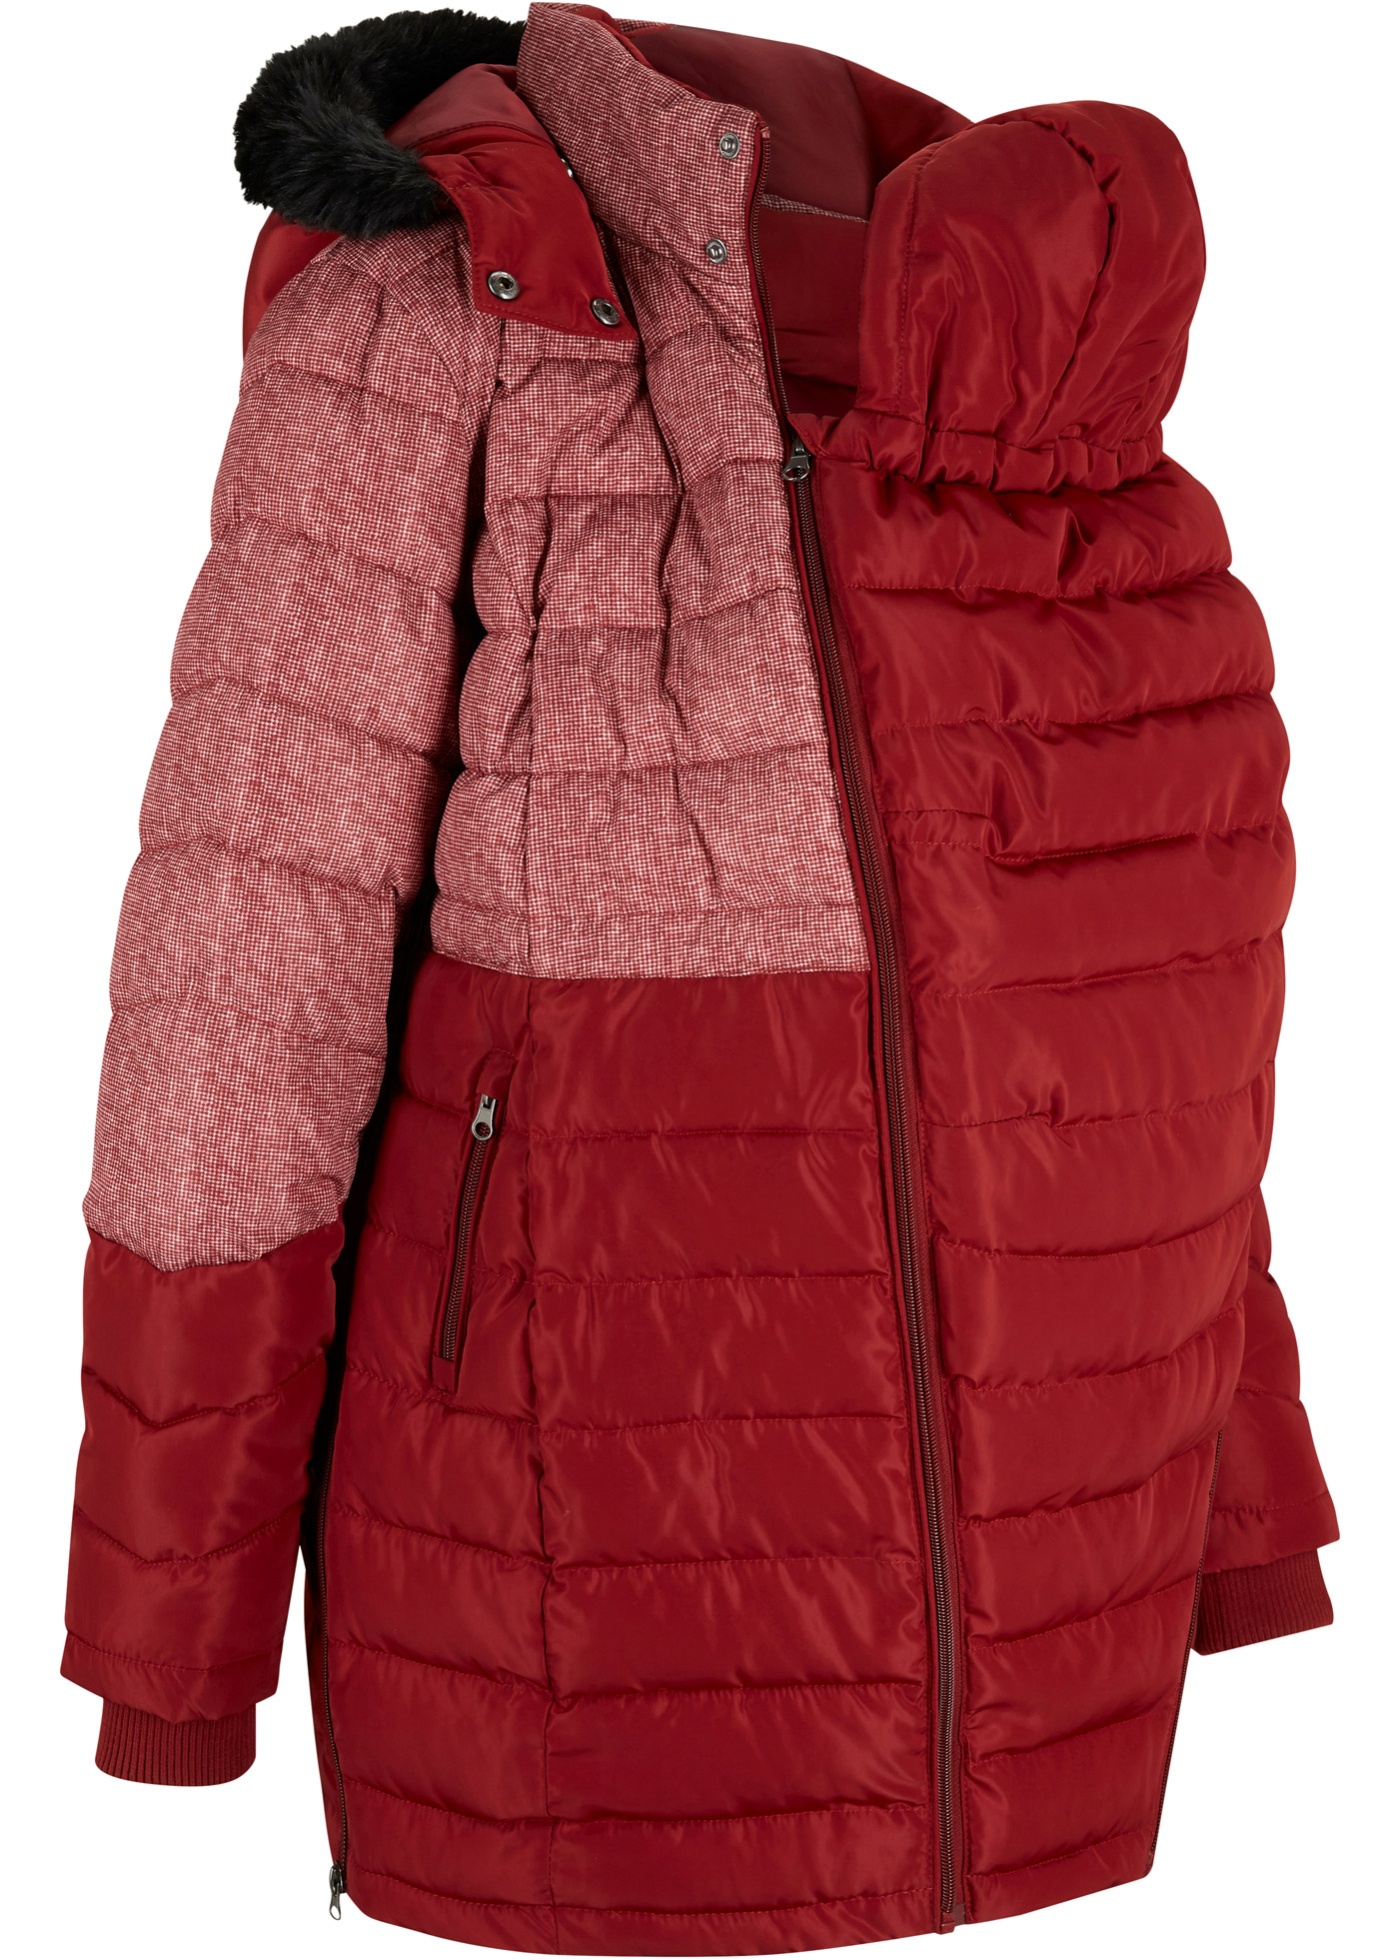 Giubbotto invernale prémaman con porta-bimbo (Rosso) - bpc bonprix collection